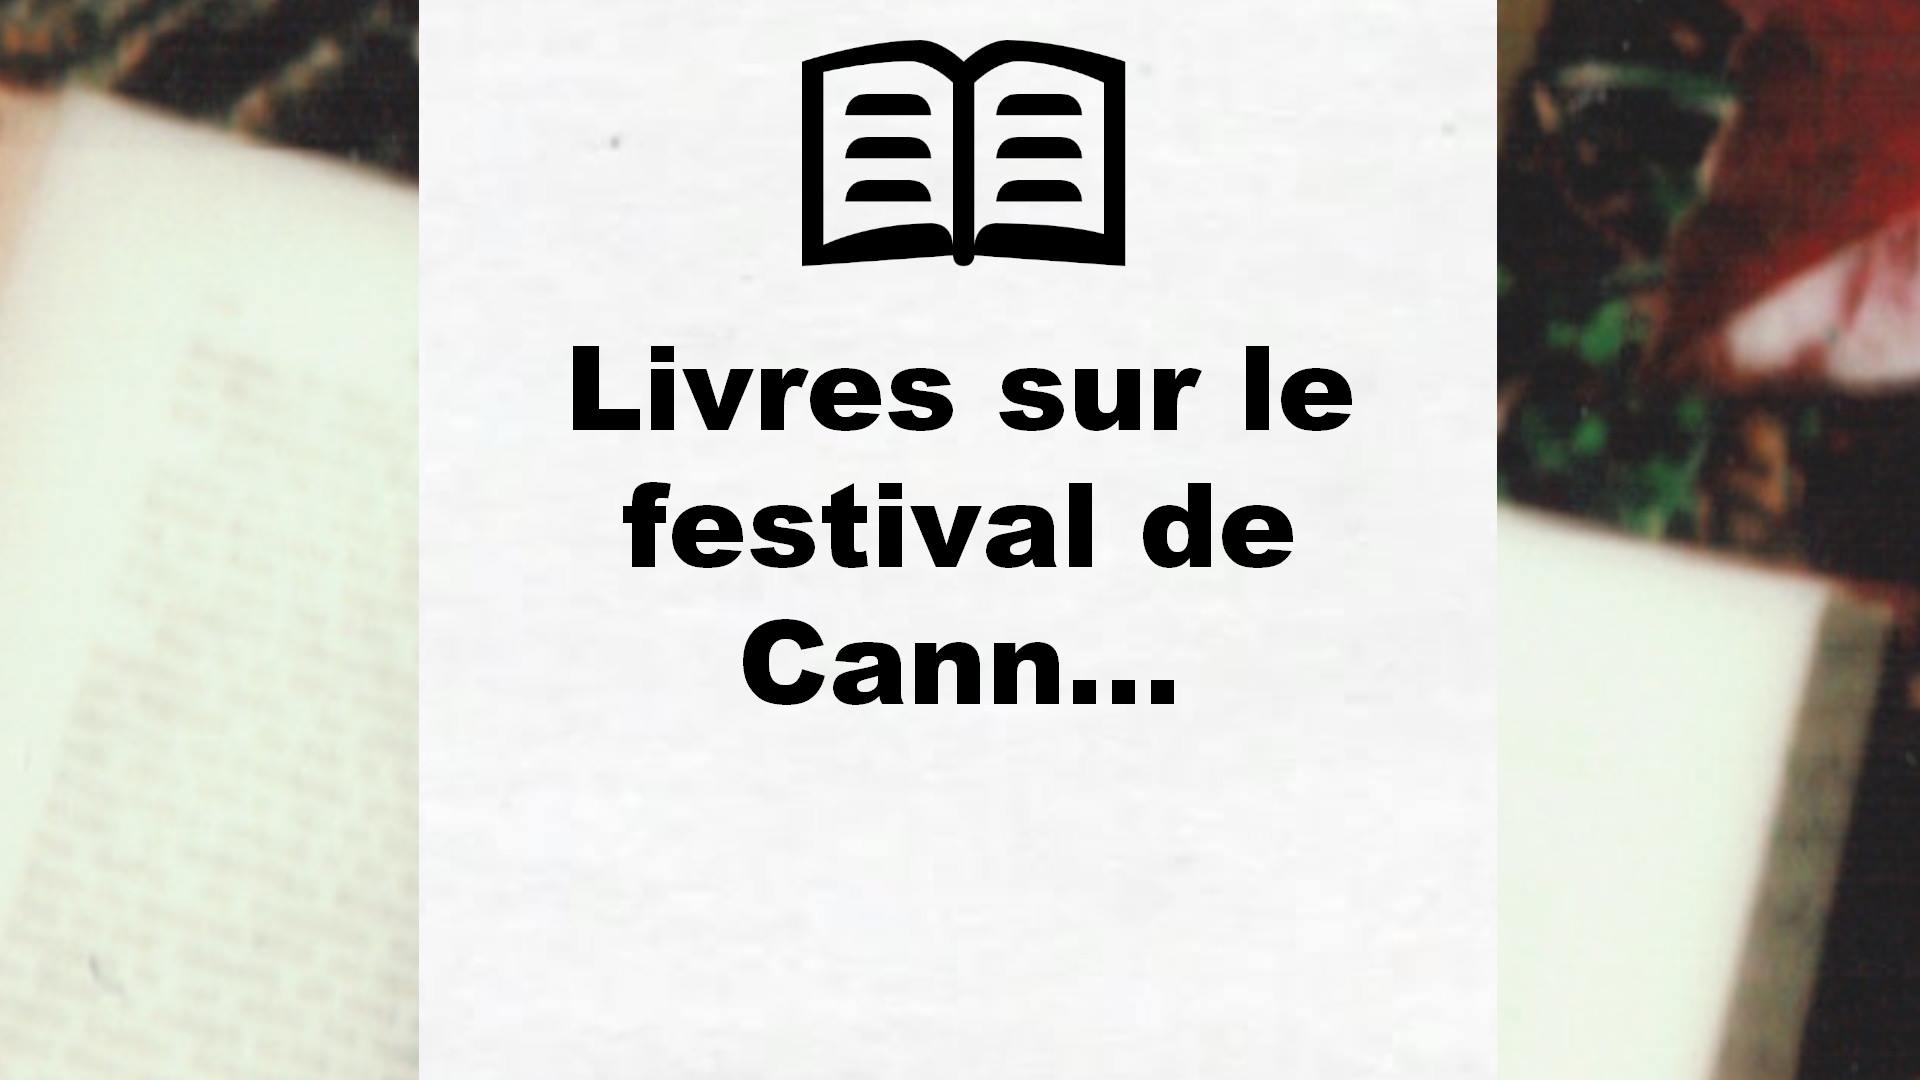 Livres sur le festival de Cannes